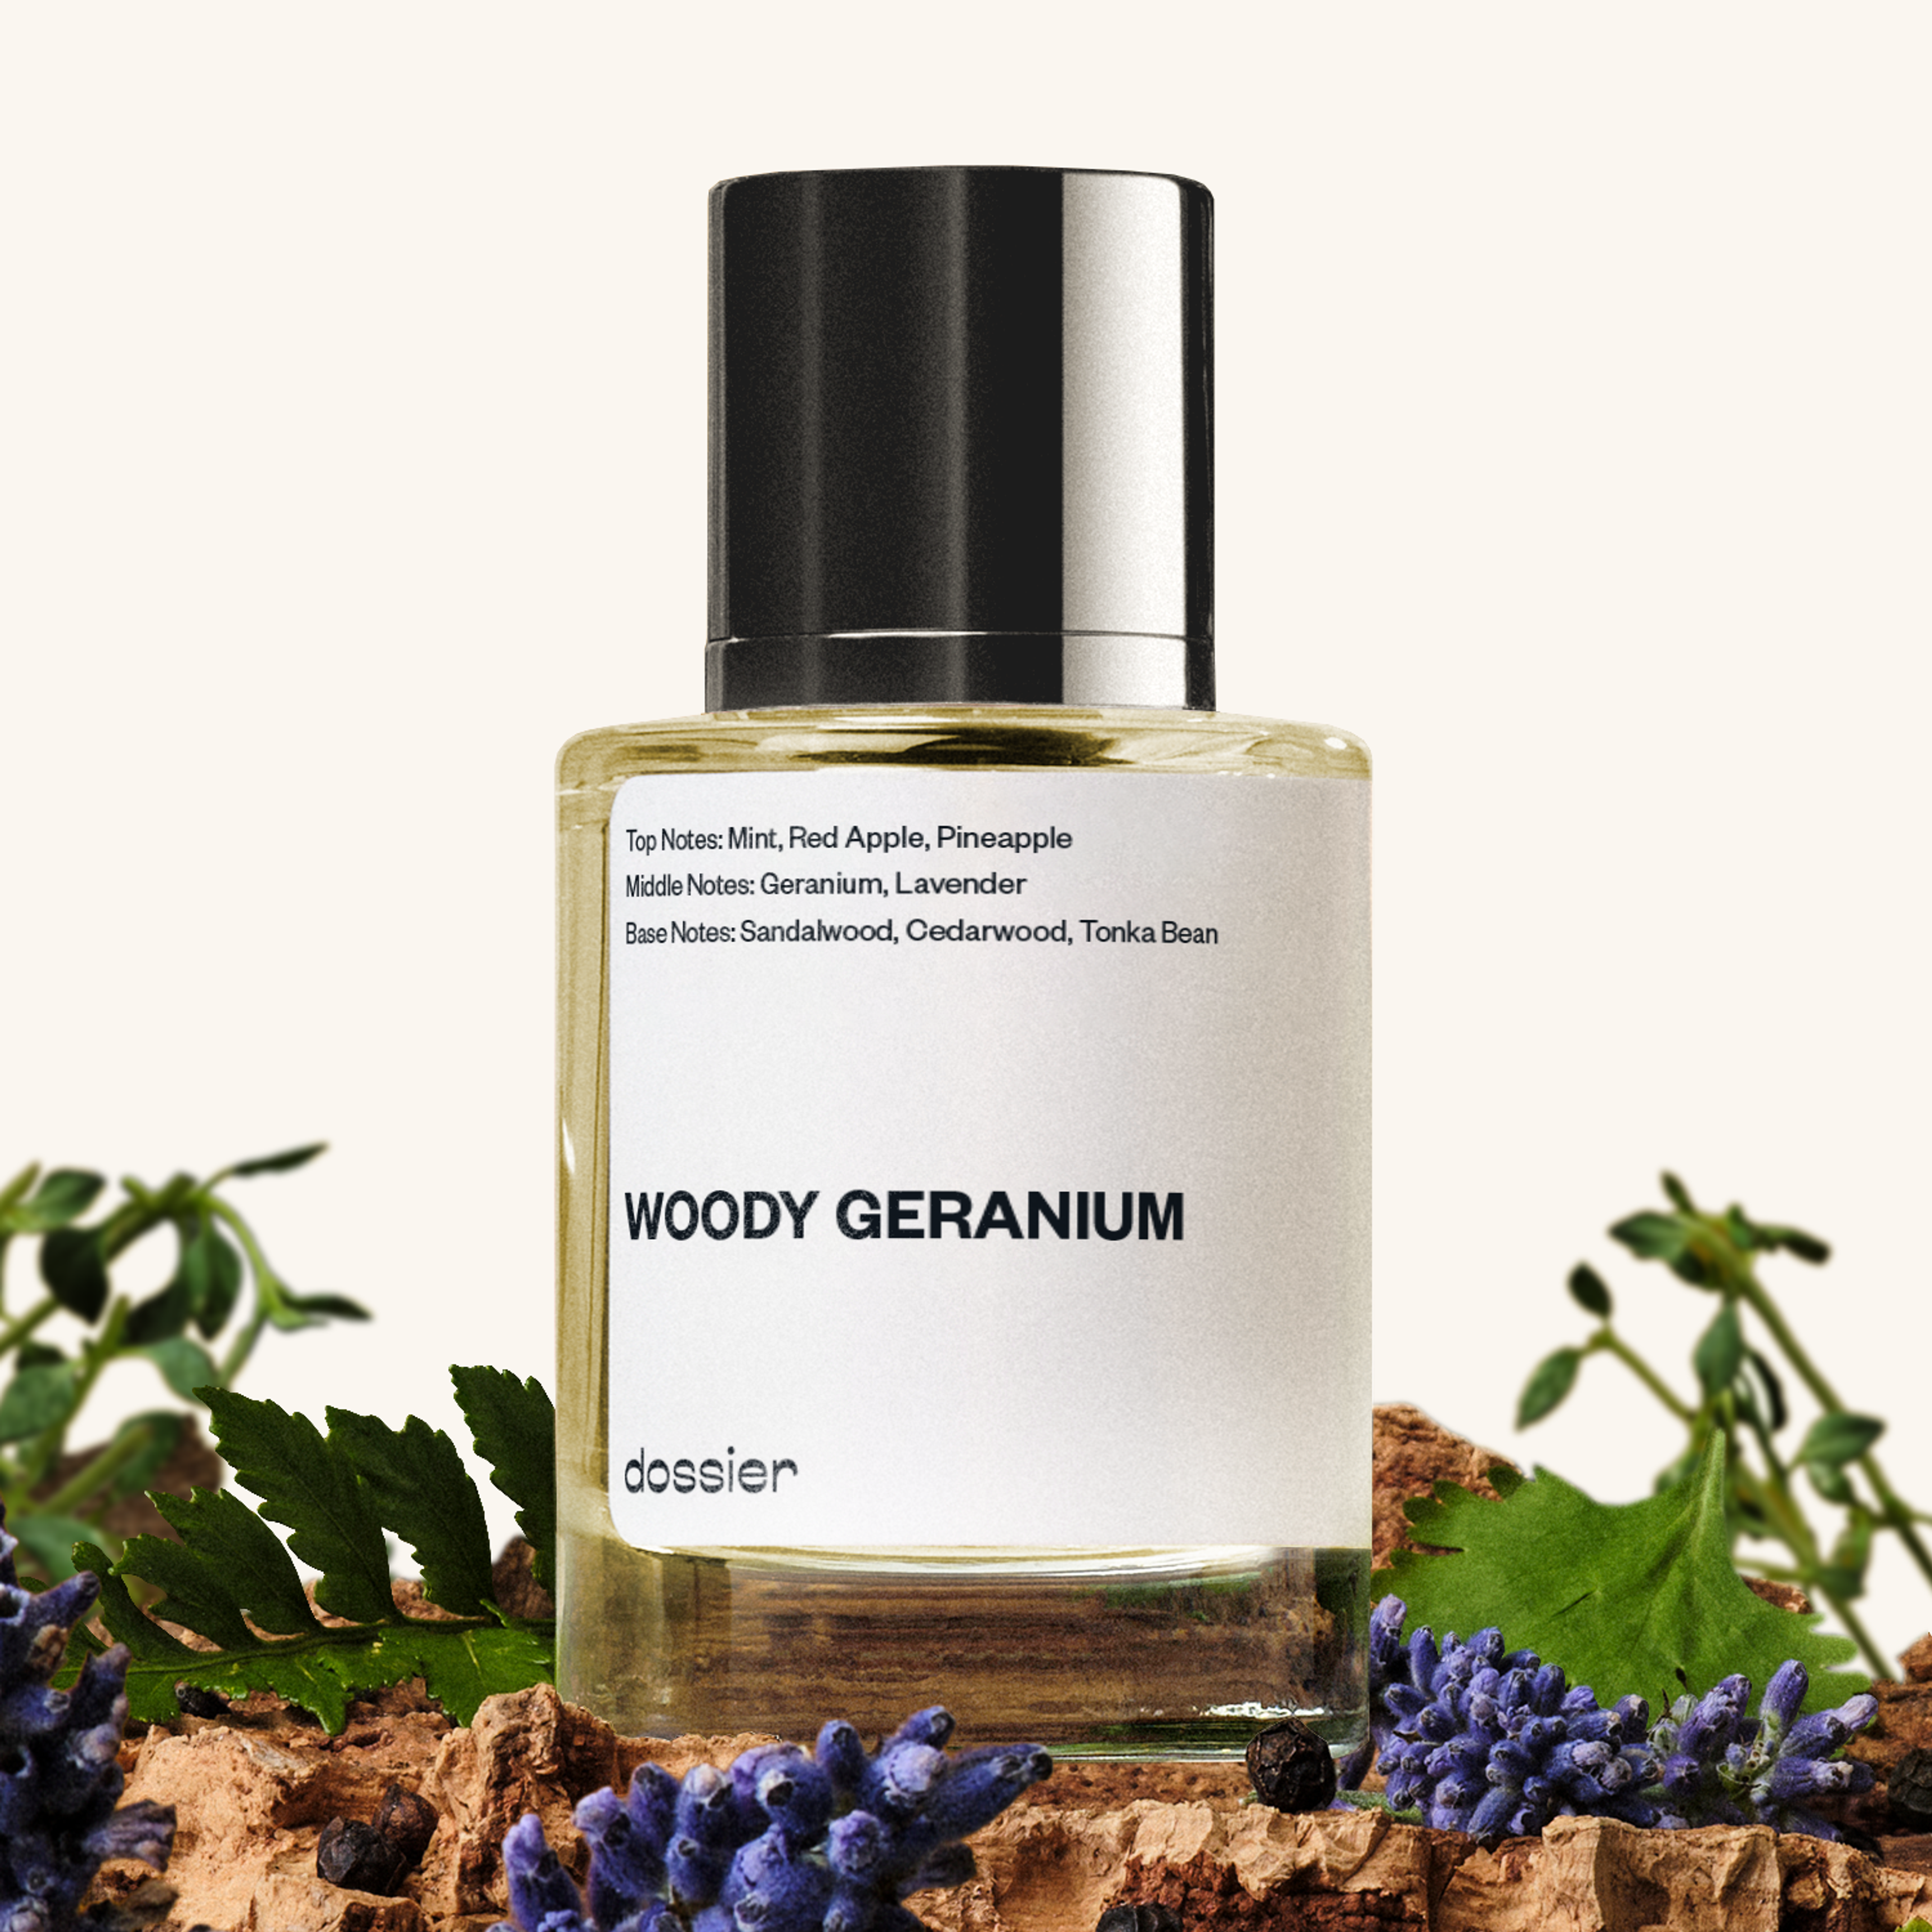 Woody Geranium